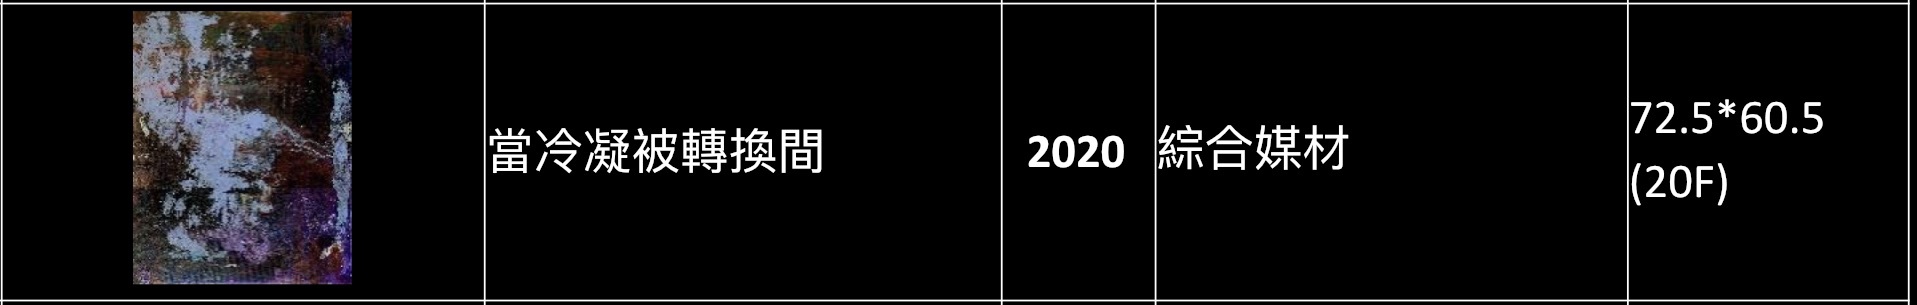 黃怡雯老師 2021創作展-於隱匿之間